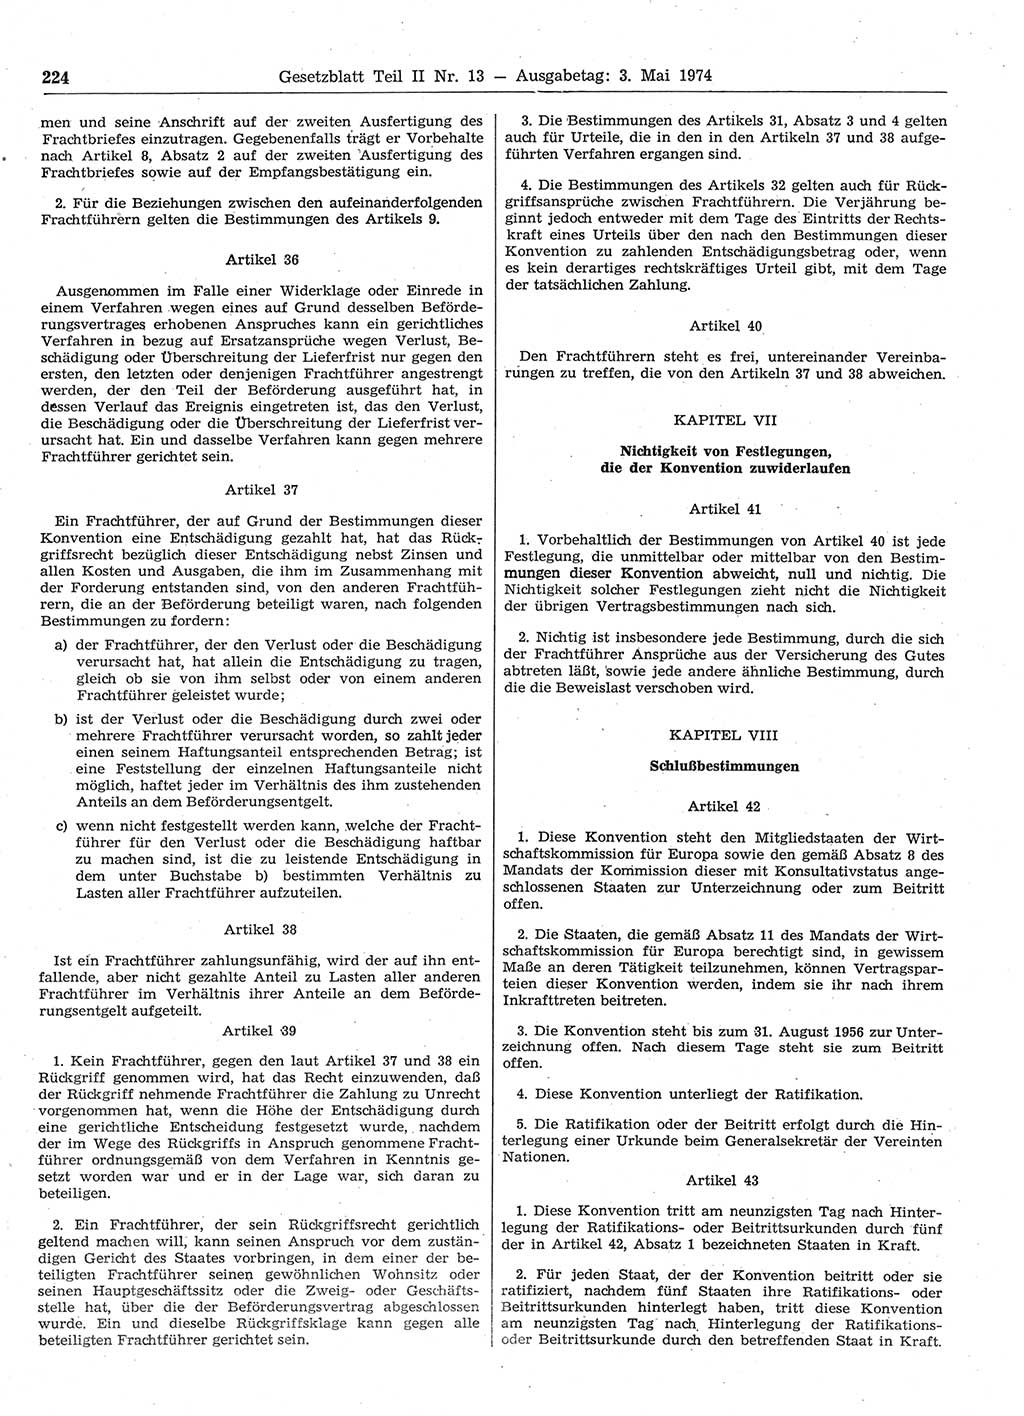 Gesetzblatt (GBl.) der Deutschen Demokratischen Republik (DDR) Teil ⅠⅠ 1974, Seite 224 (GBl. DDR ⅠⅠ 1974, S. 224)